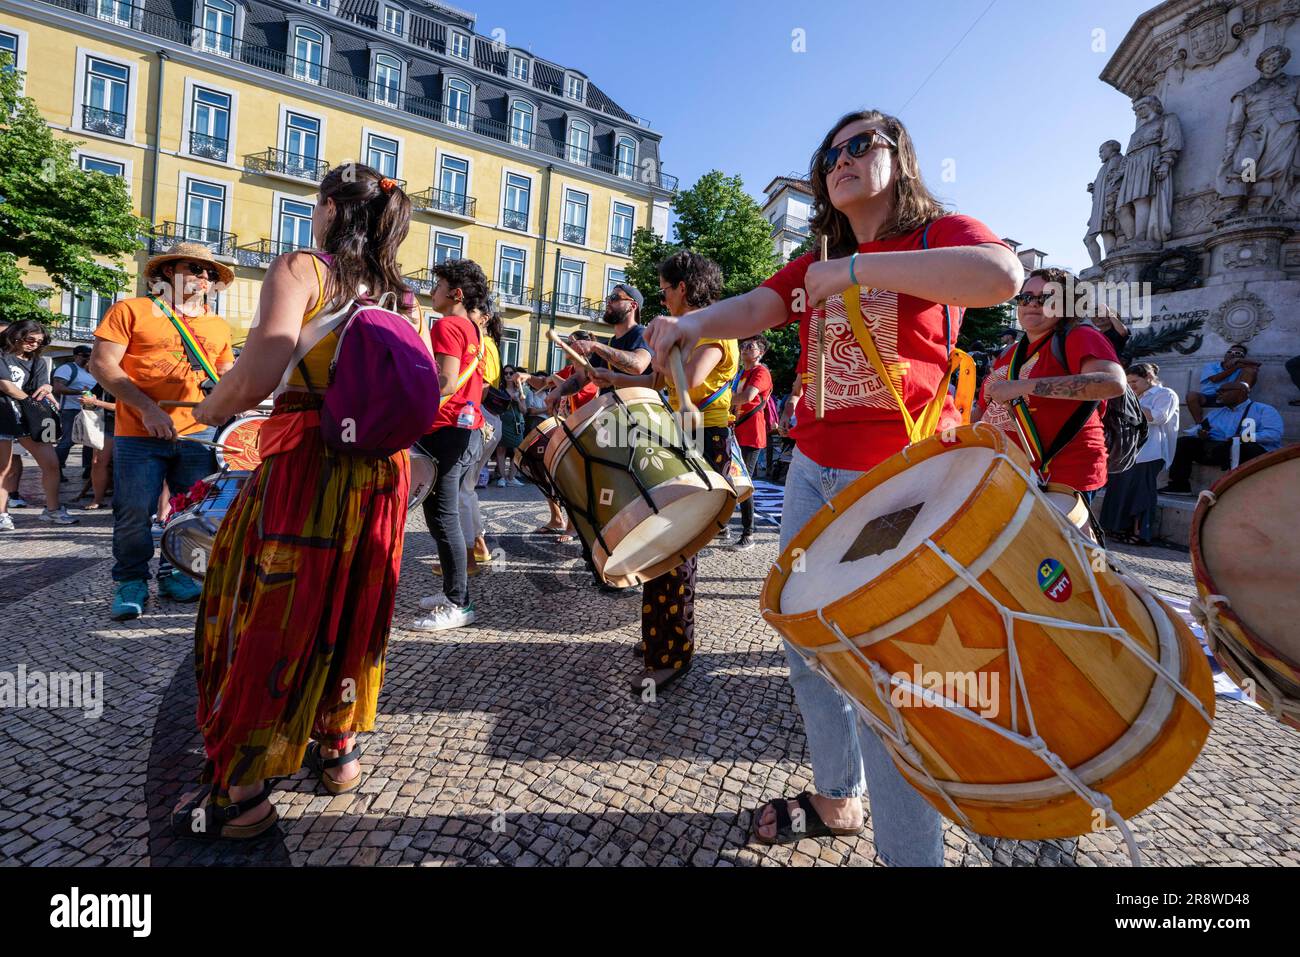 Varios activistas con instrumentos musicales son vistos dando una actuación  musical en la plaza Luis de Camoes durante una manifestación contra las  medidas gubernamentales sobre la vivienda en Portugal. El evento ha